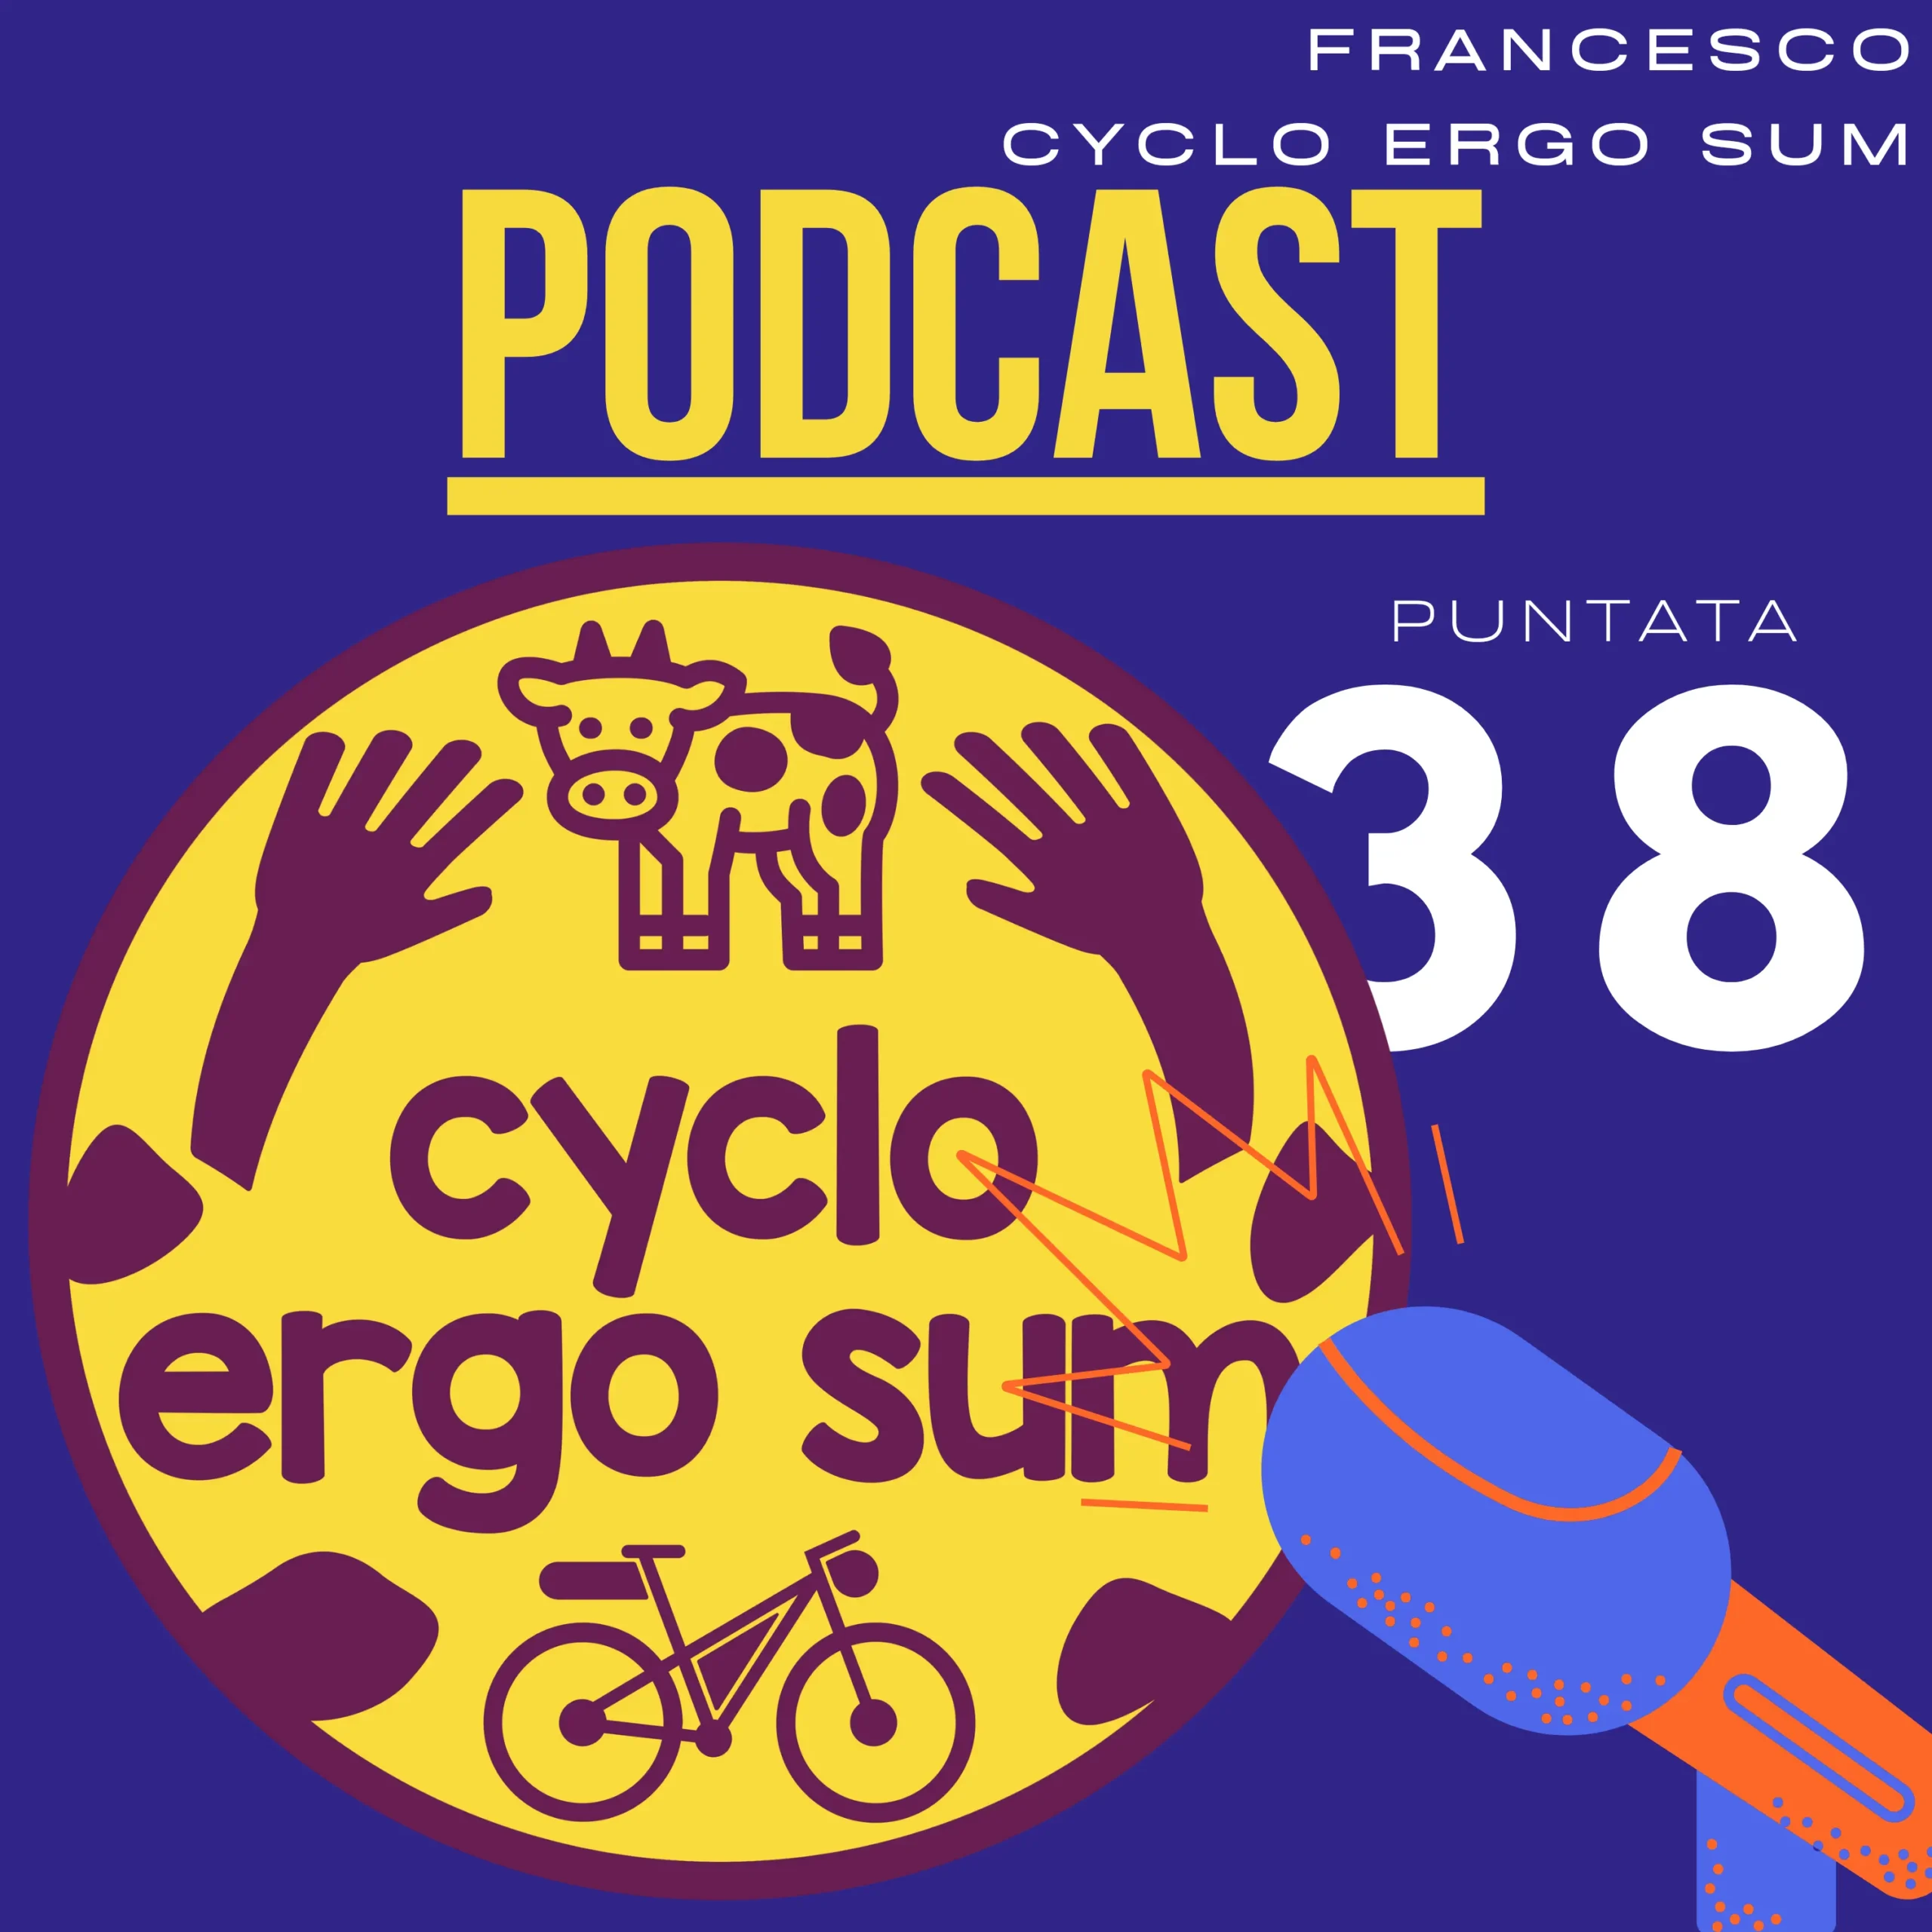 Cyclo Ergo Sum Progetti | il canale YouTube